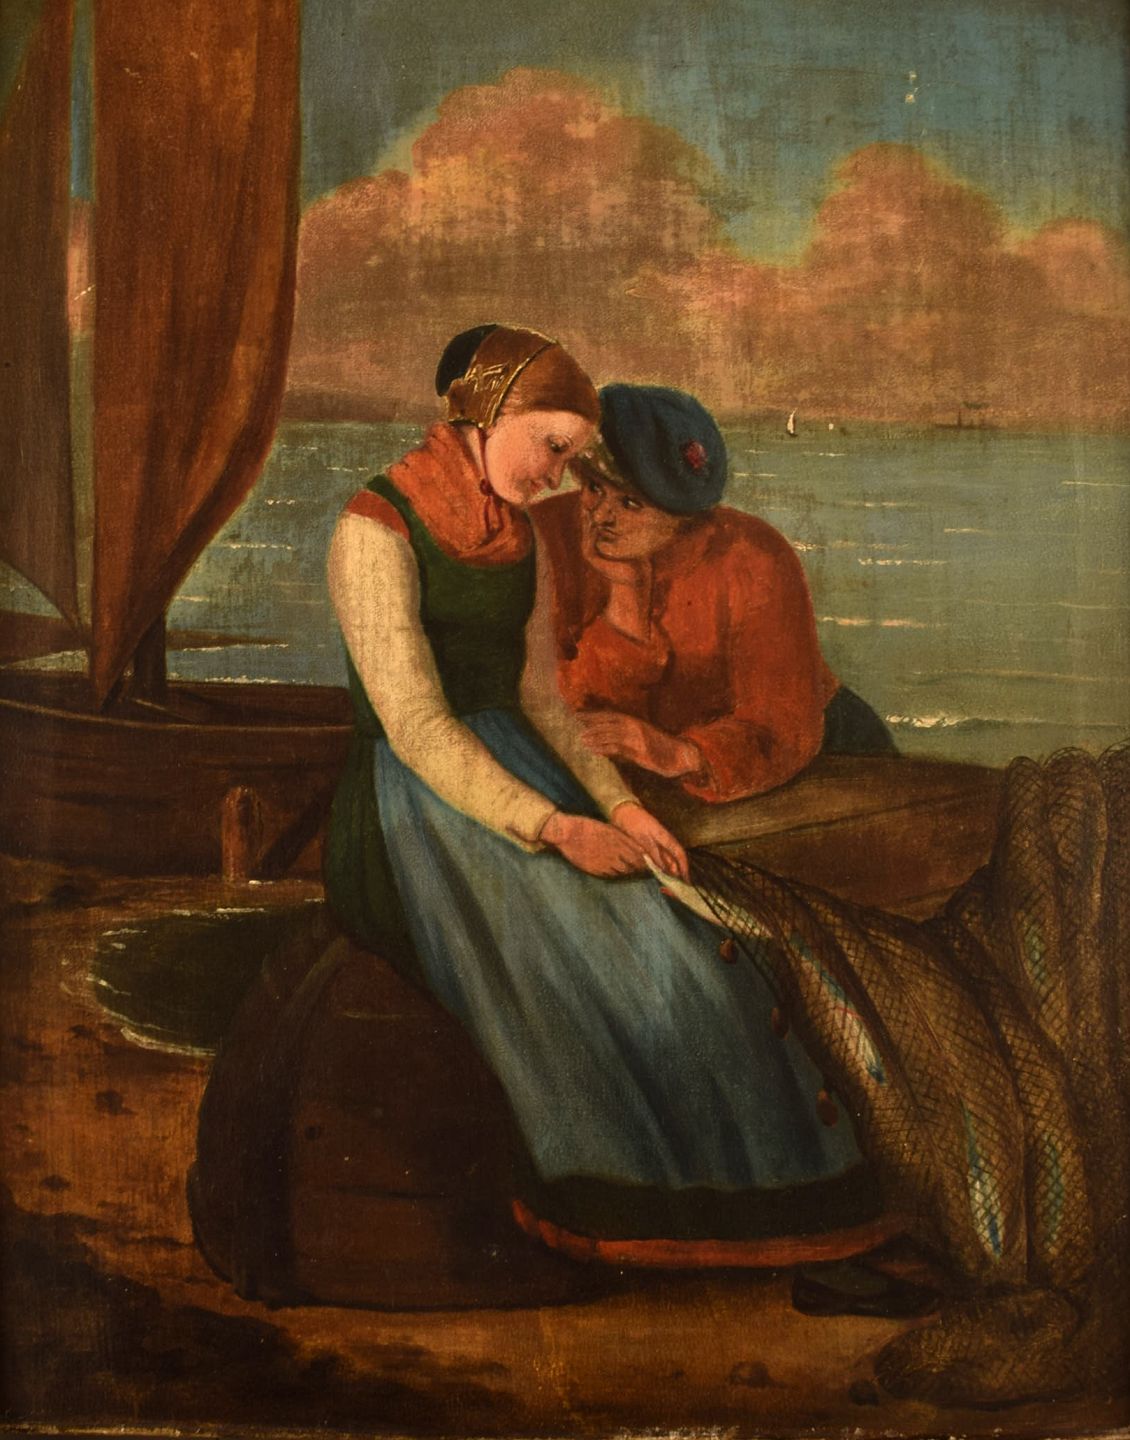 www.Antikvitet.net - Engelsk genremaler. Romantisk par. Olie på 1800-tallet.